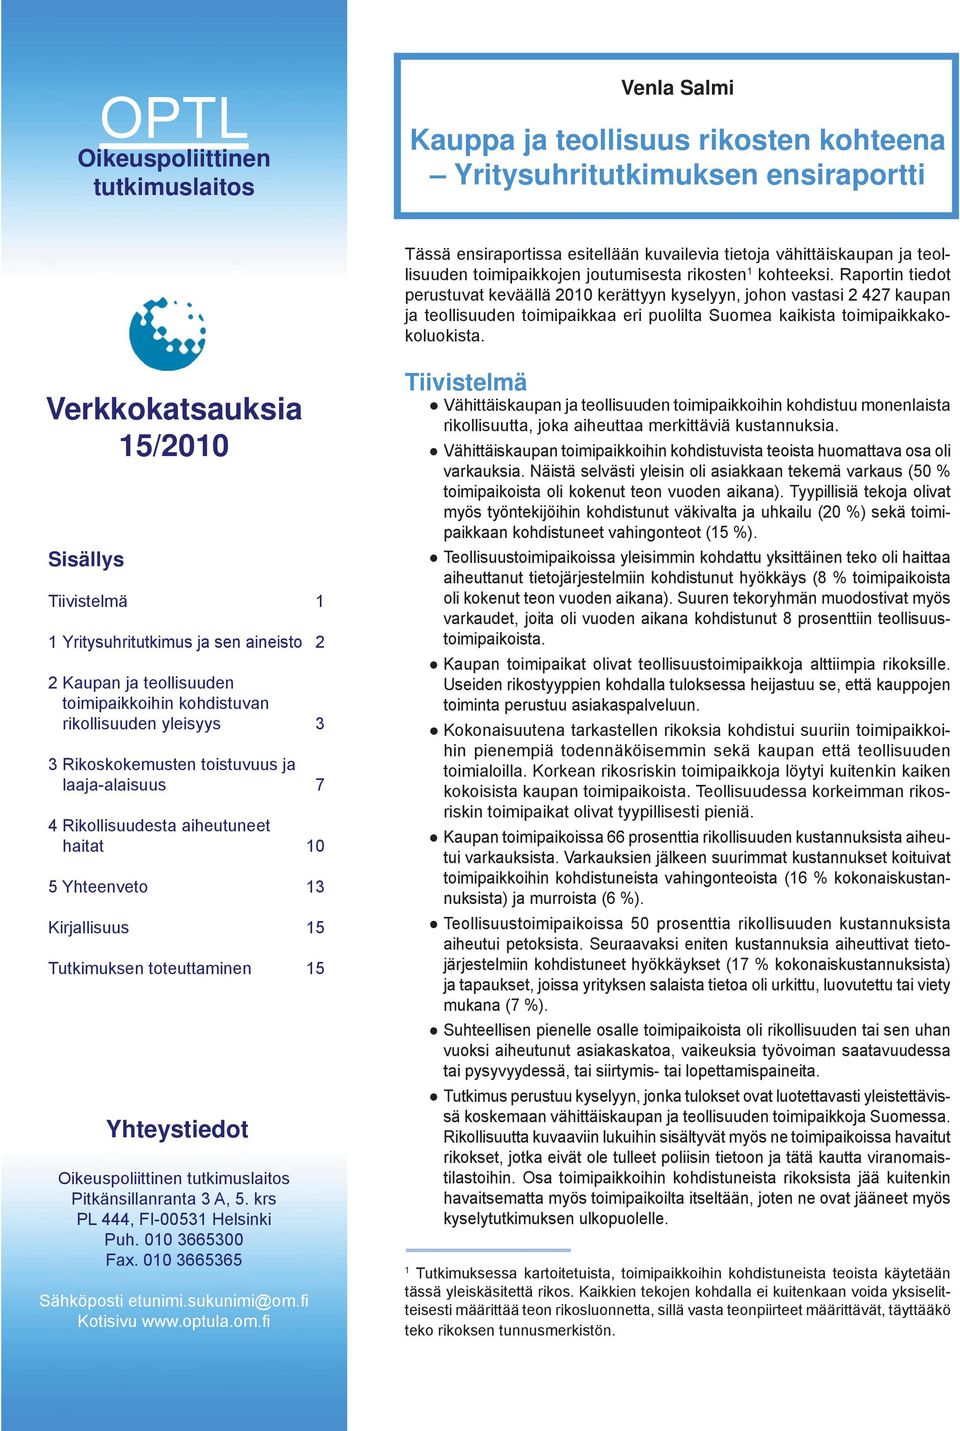 Raportin tiedot perustuvat keväällä 00 kerättyyn kyselyyn, johon vastasi kaupan ja teollisuuden toimipaikkaa eri puolilta Suomea kaikista toimipaikkakokoluokista.